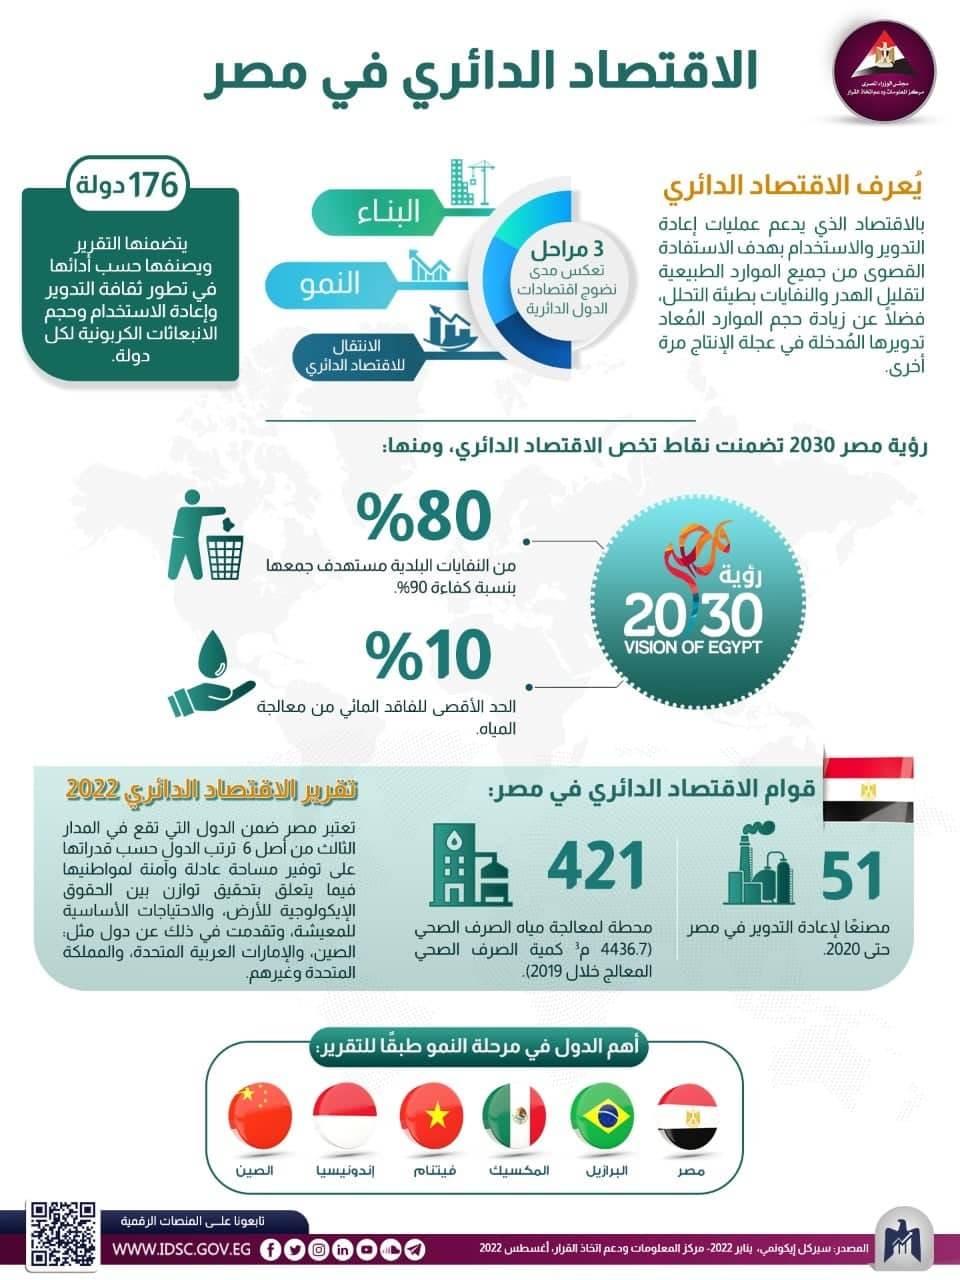  إنفوجرافيك بعنوان: "الاقتصاد الدائري في مصر"